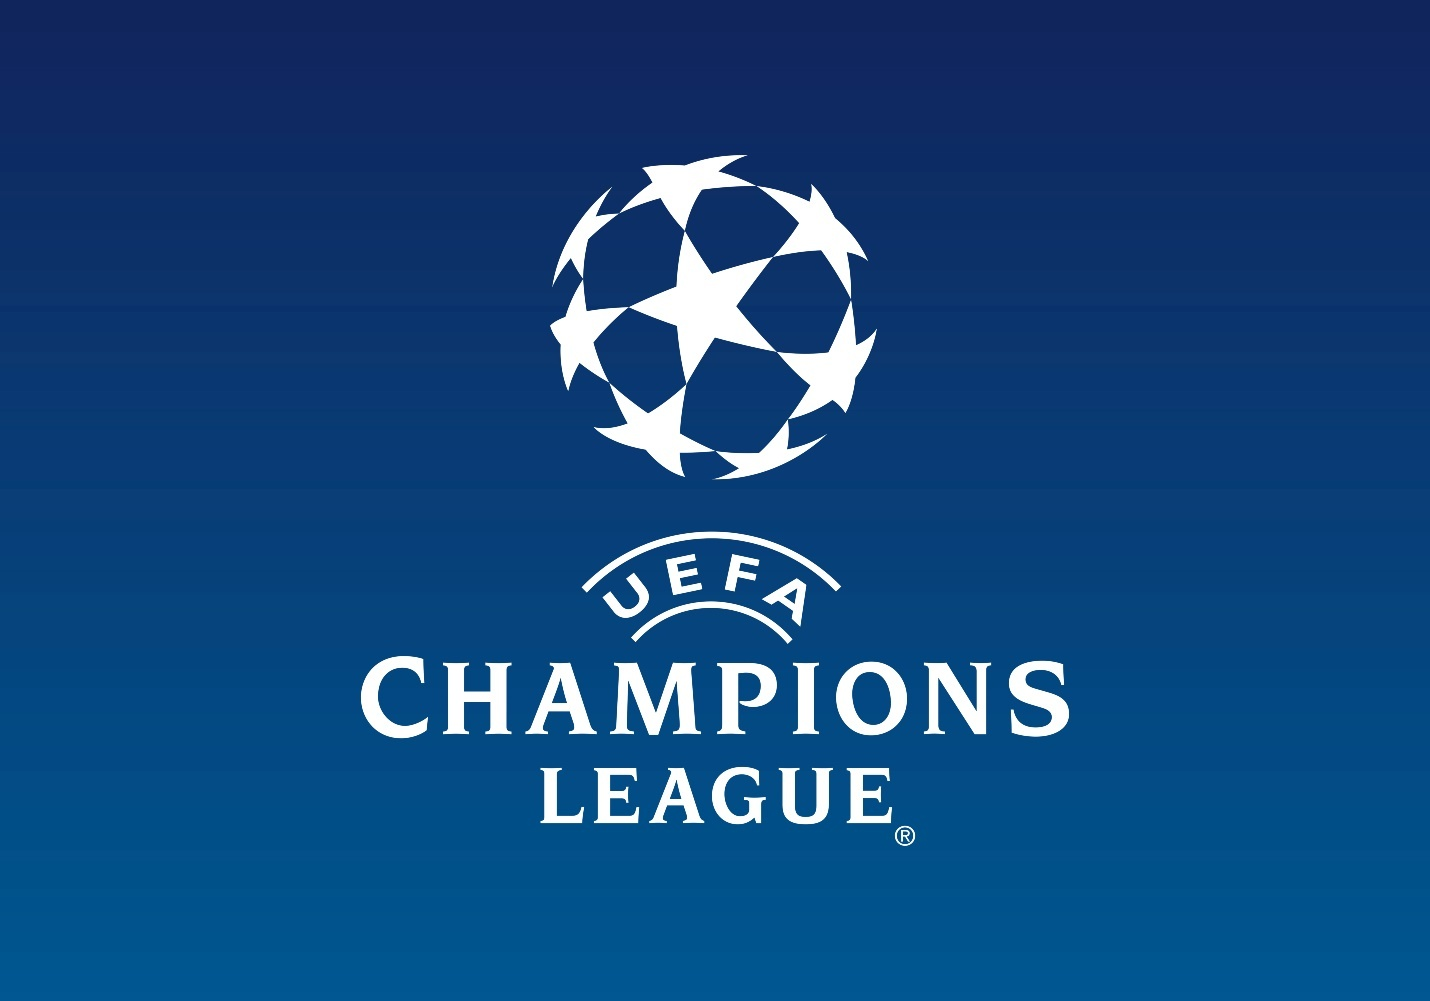 The UEFA Champions League logo